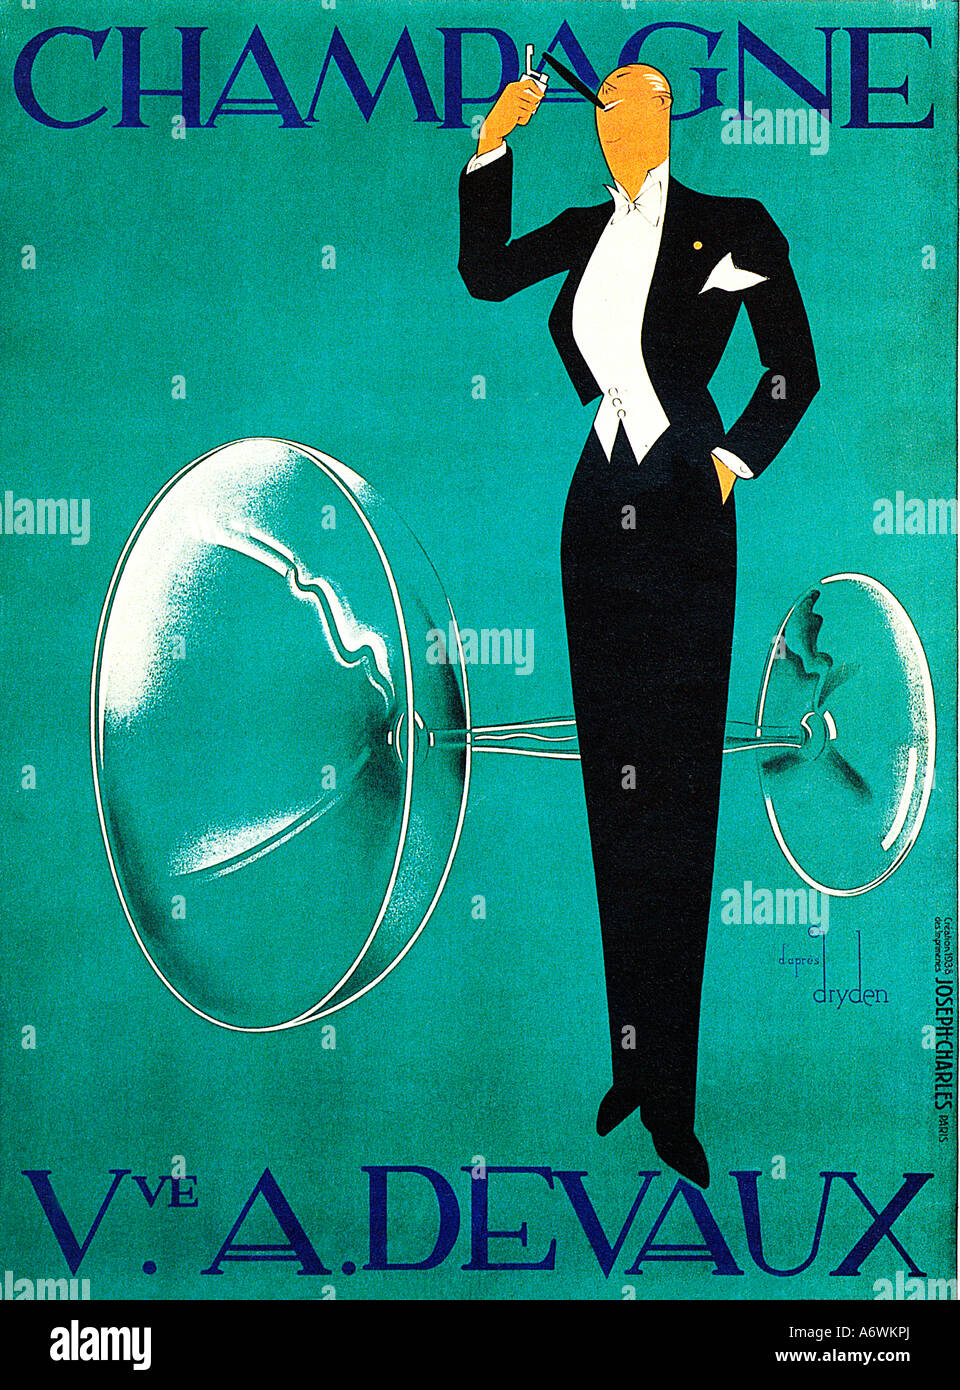 Champagne Devaux la célèbre affiche Art Déco des années 1930 pour la maison française par Ernst Dryden Banque D'Images